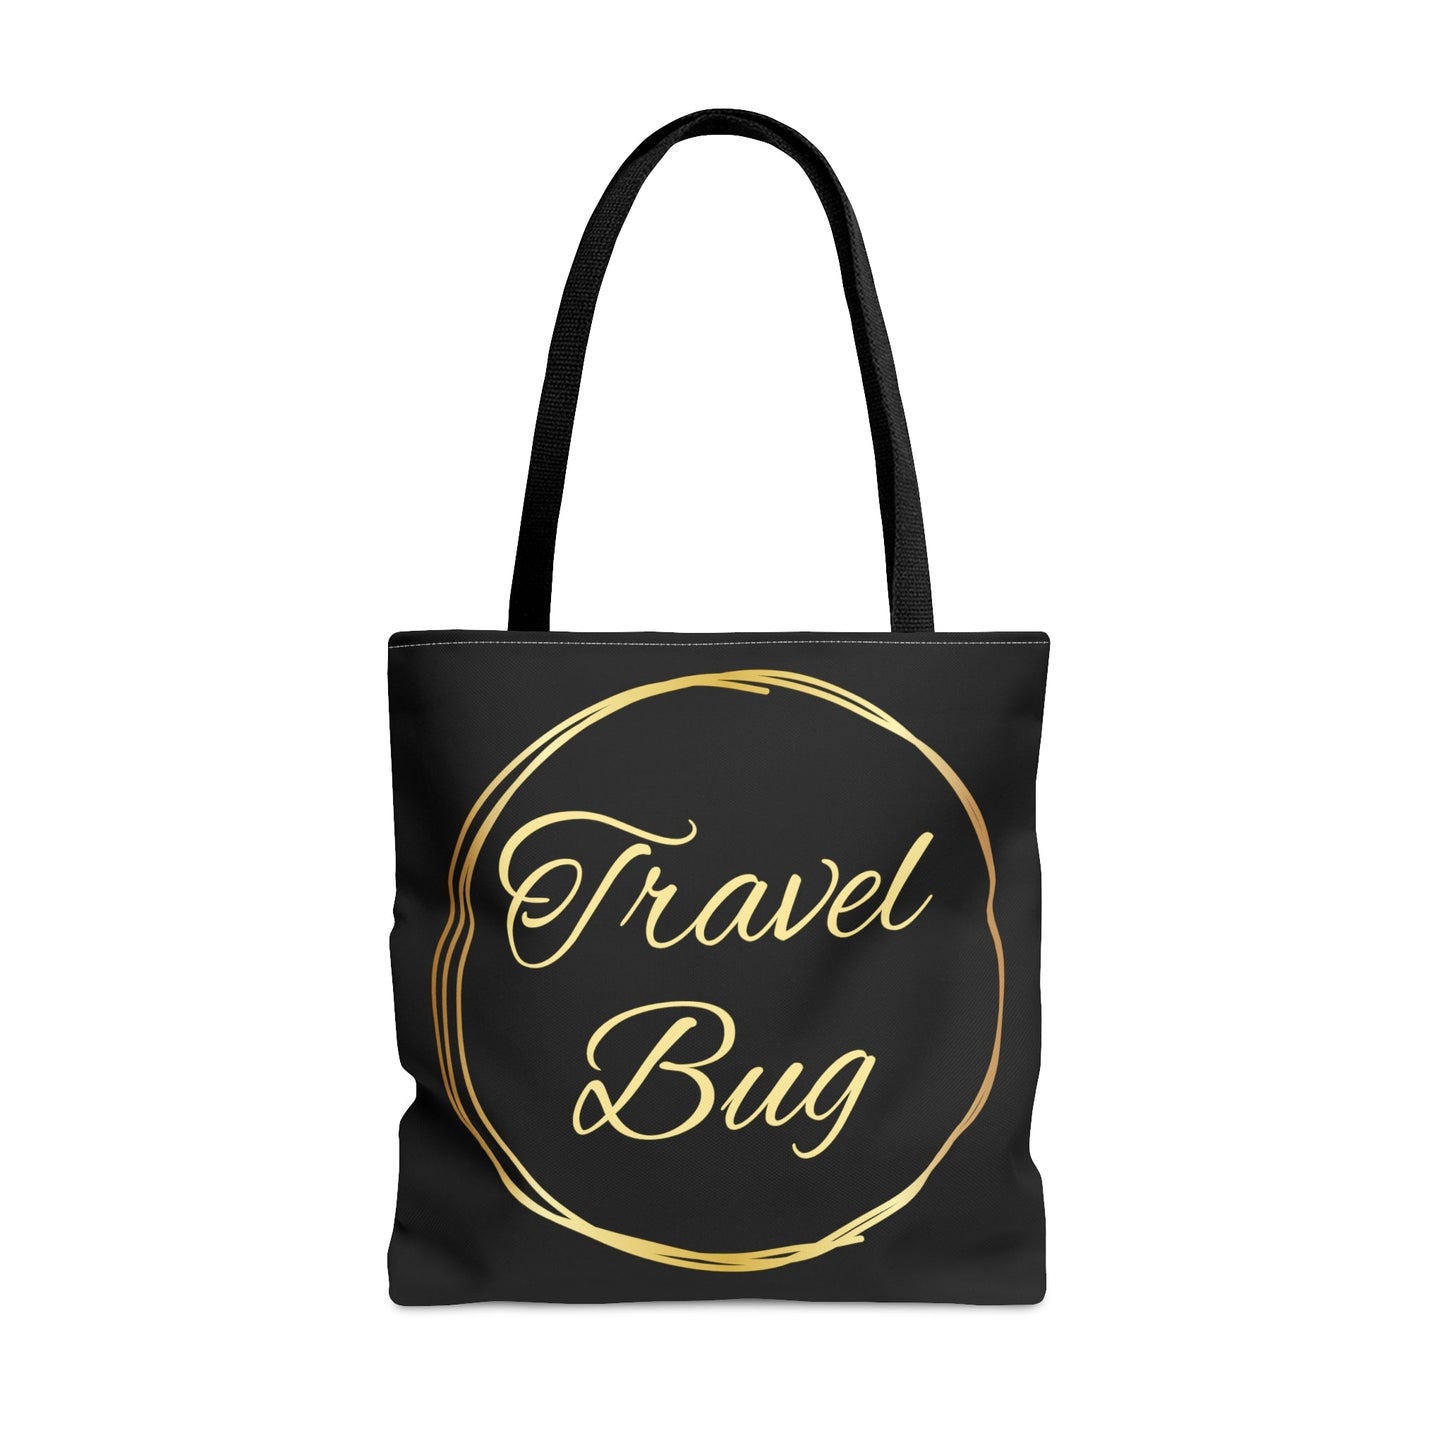 Travel Bug | Tote Bag